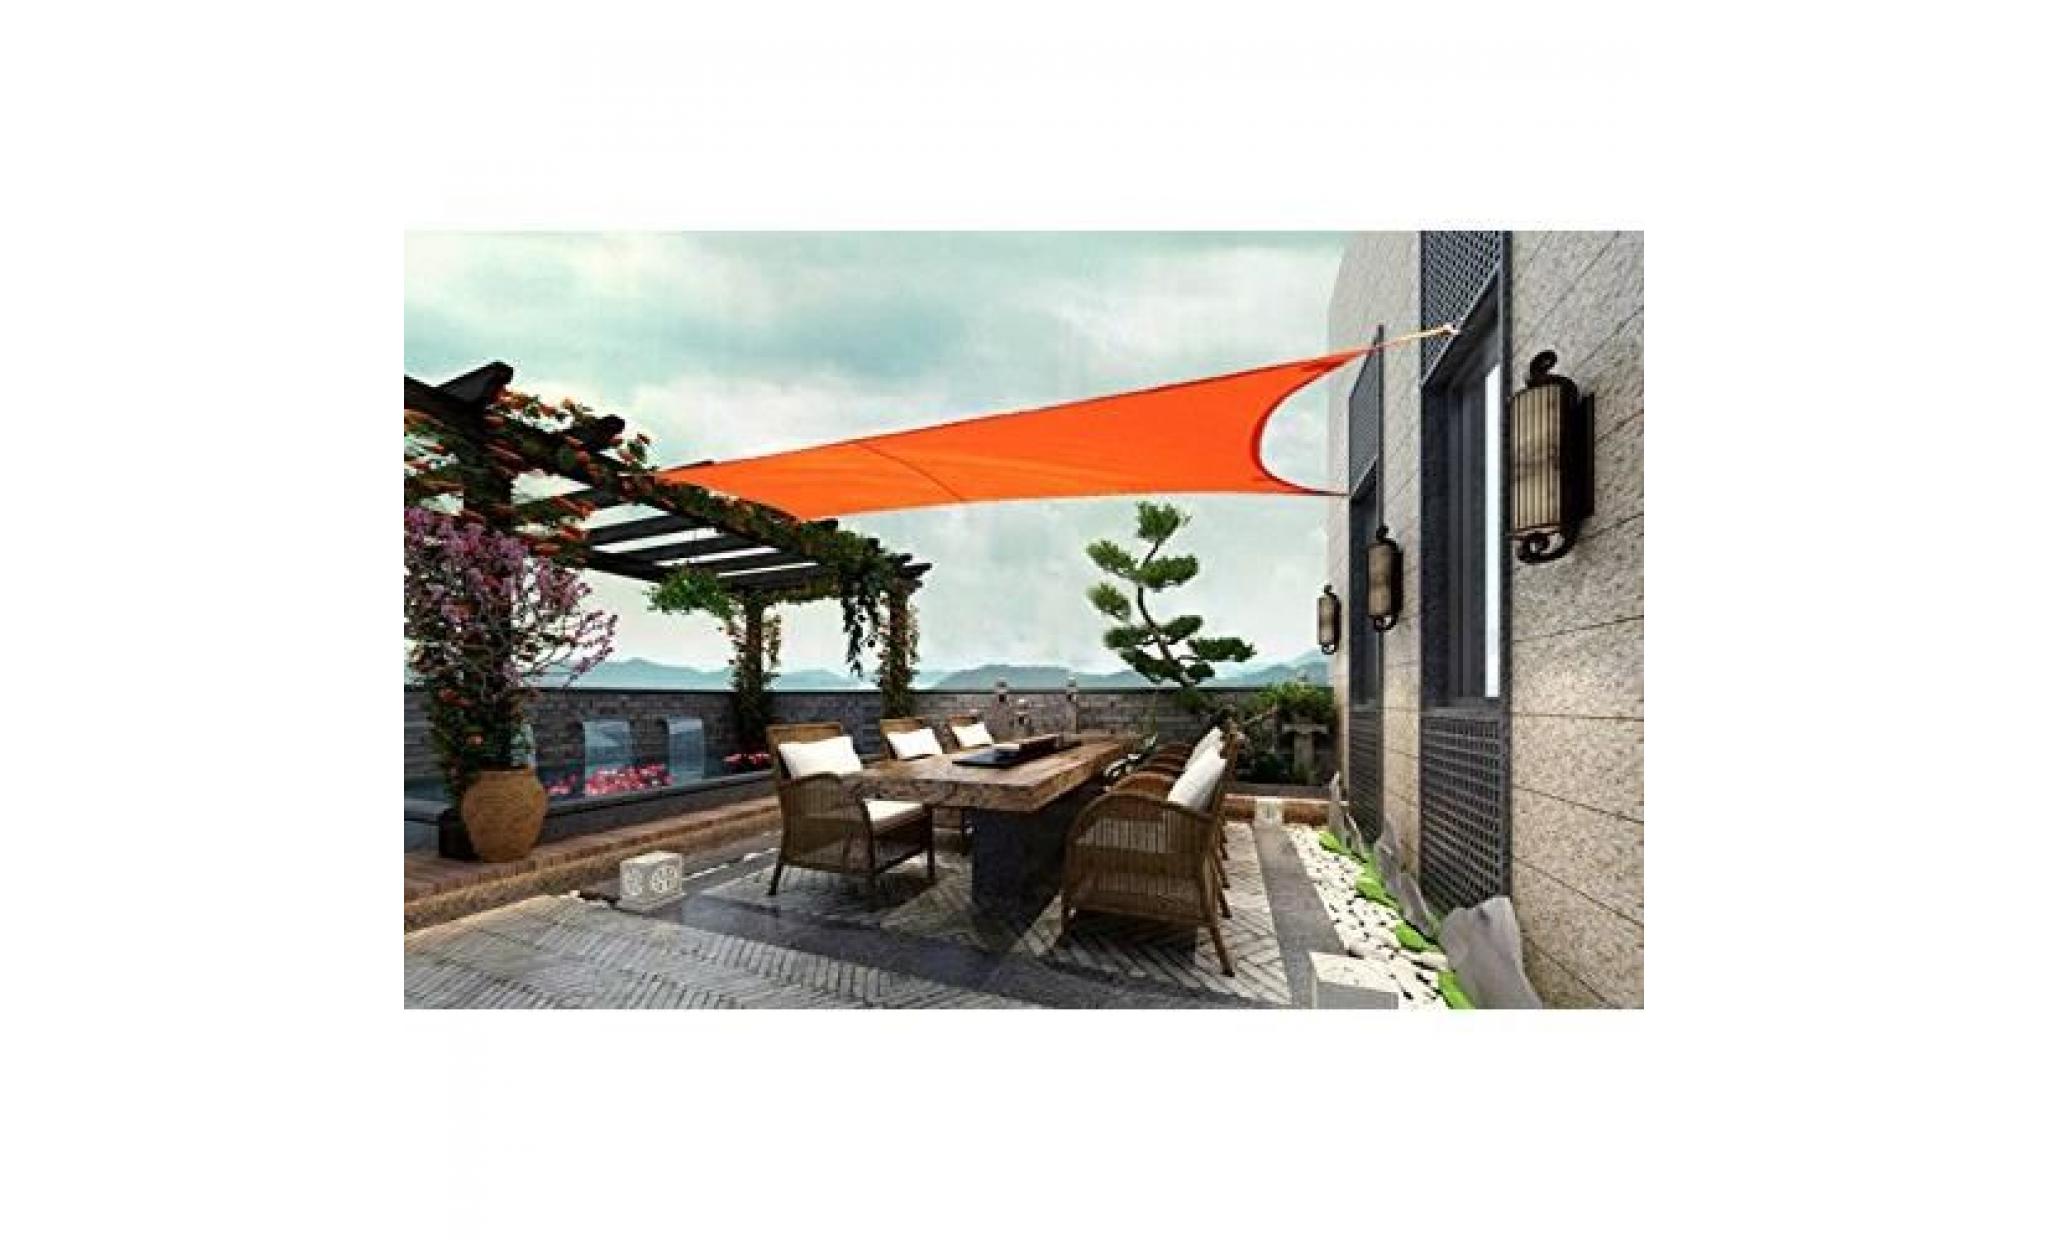 laxllent voiles d'ombrage,2.4x3m,orange, toile rectangulaire tissu anti uv imperméable à l'eau en polyester pour jardin,terrasse